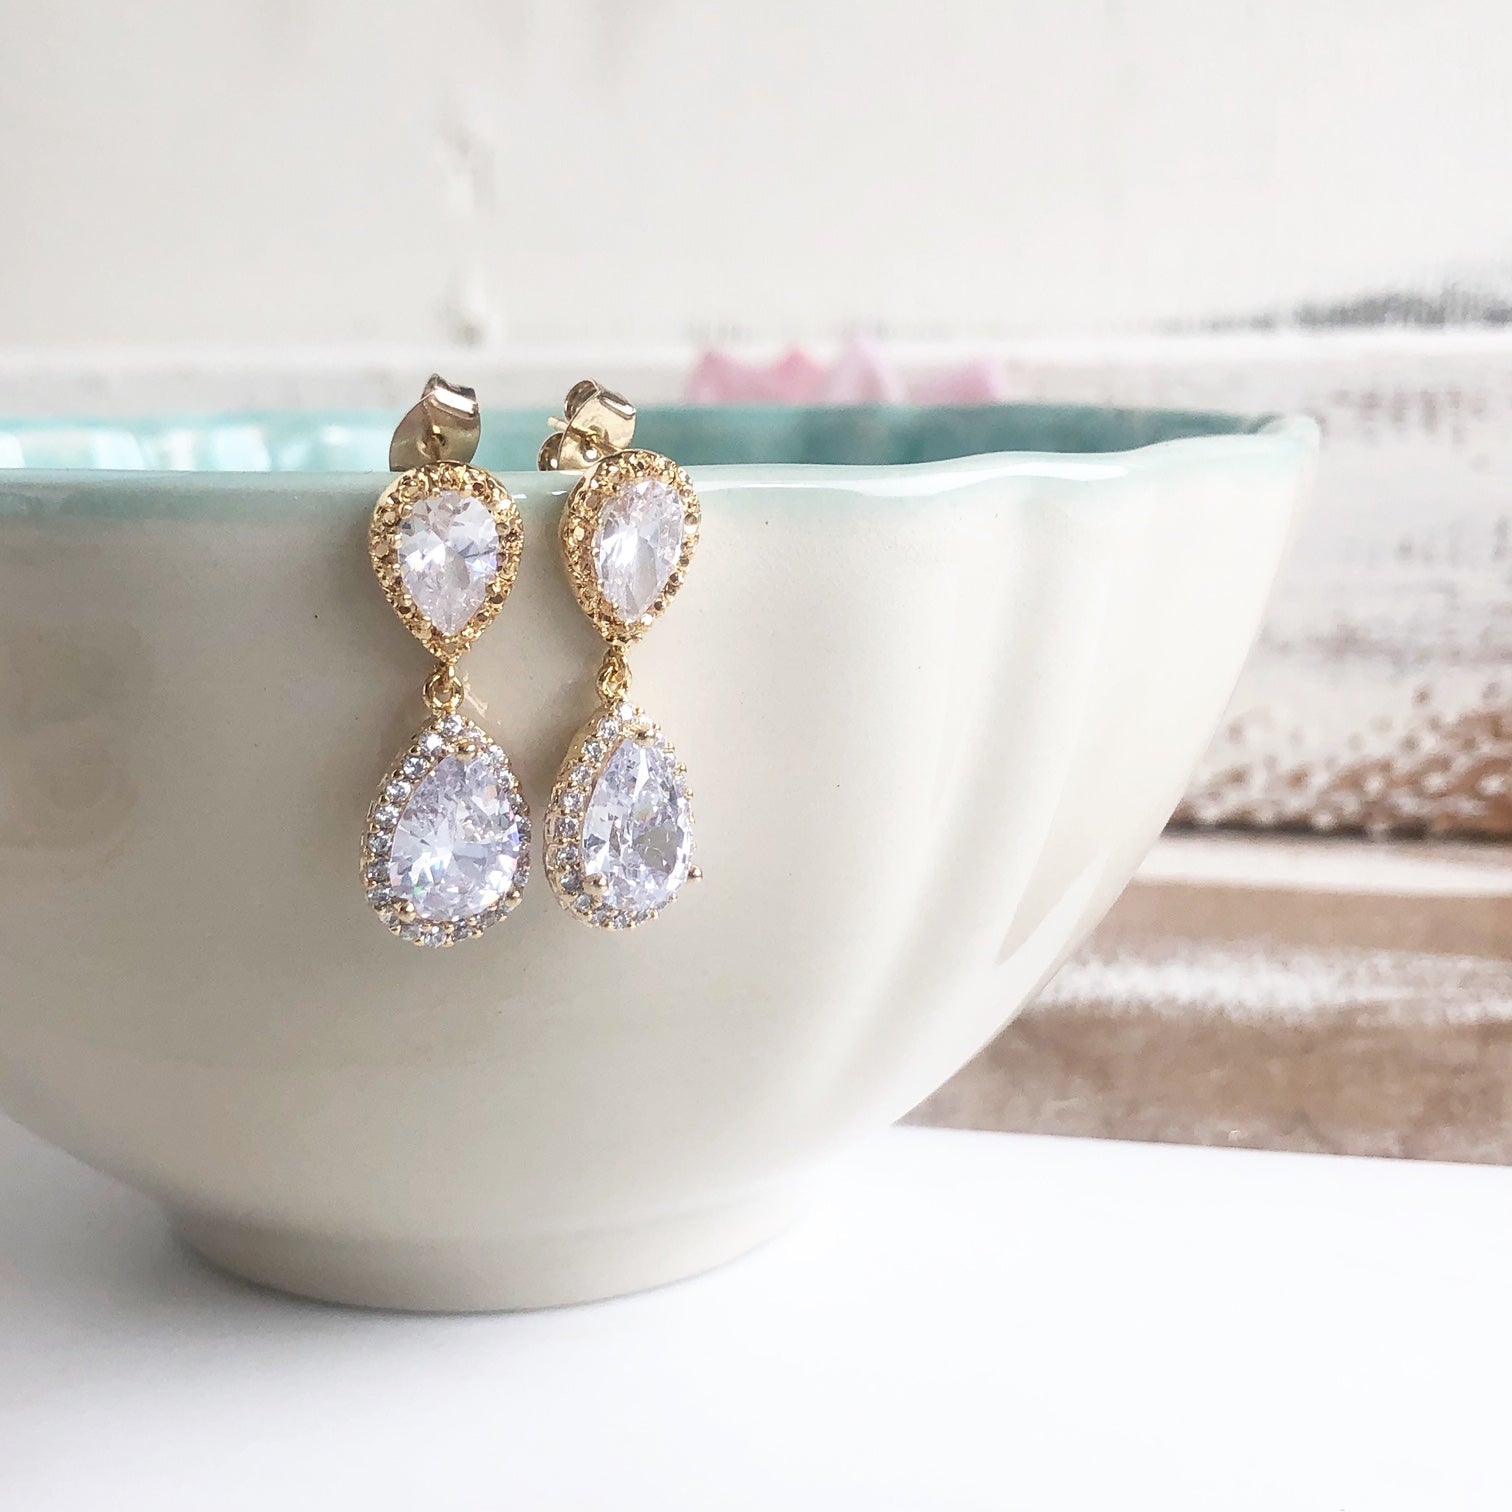 Bridal Earring : Buy Emerald & Uneven Pearl Drop Diamond Earrings For Women